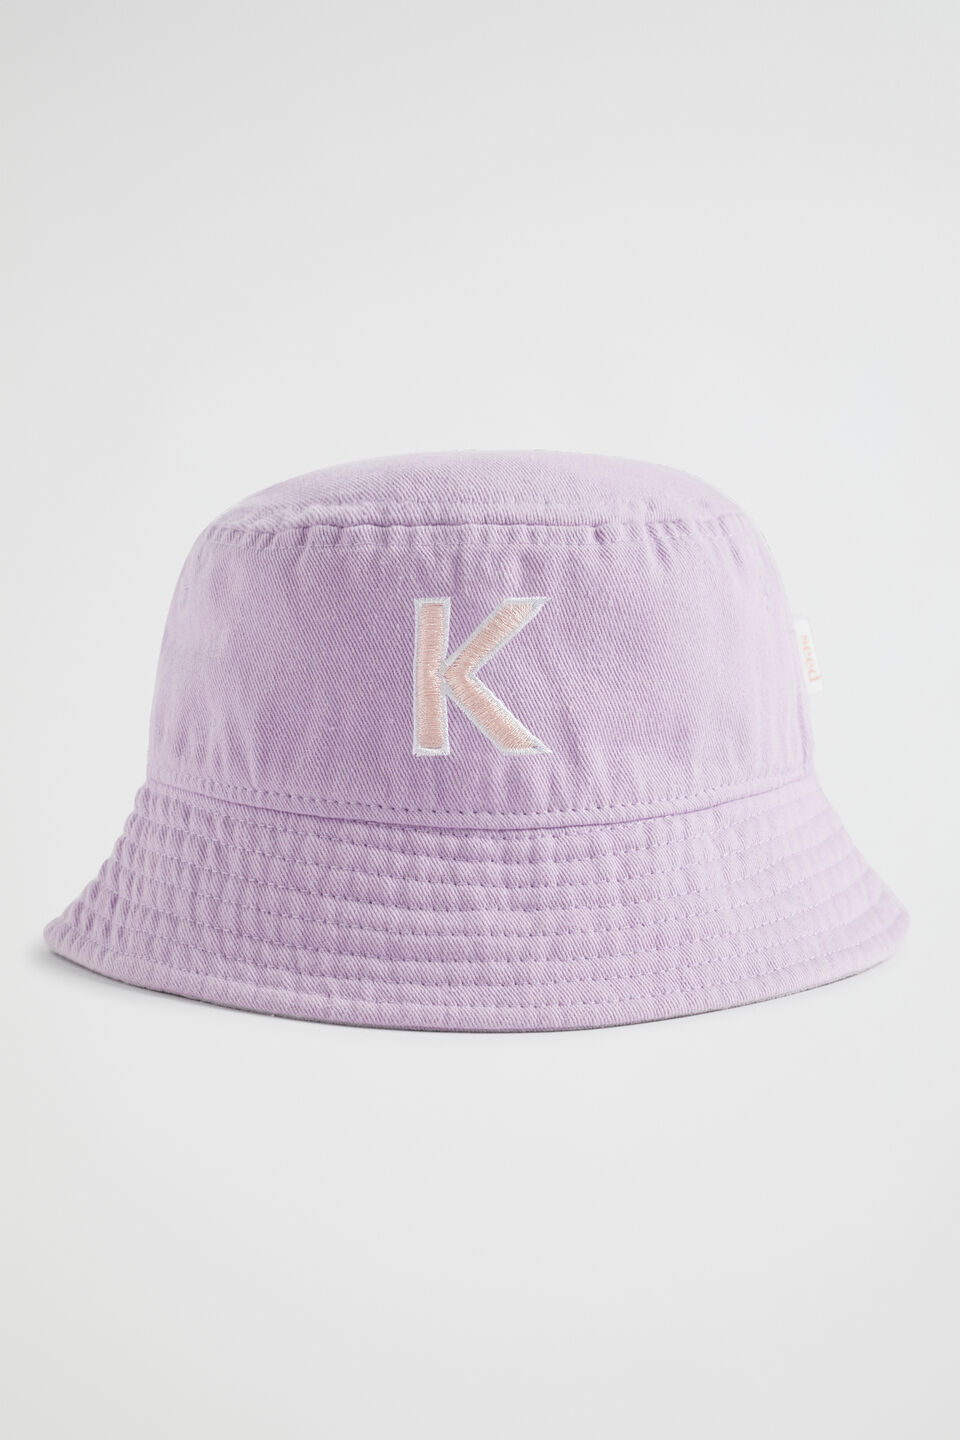 Initial Emb Bucket Hat  K